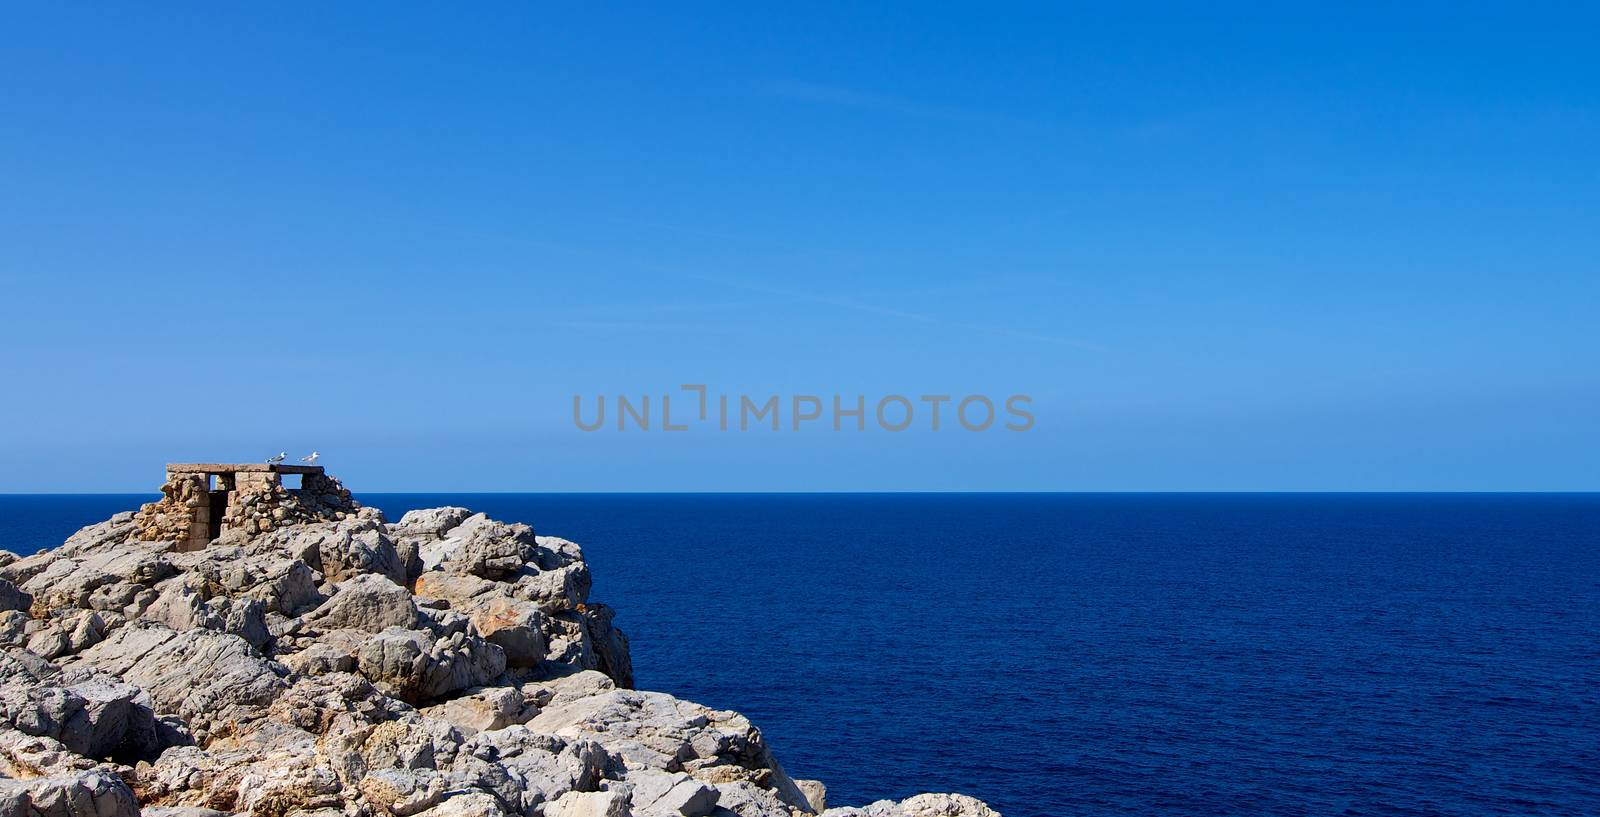 Artillery Facilities in Menorca by zhekos